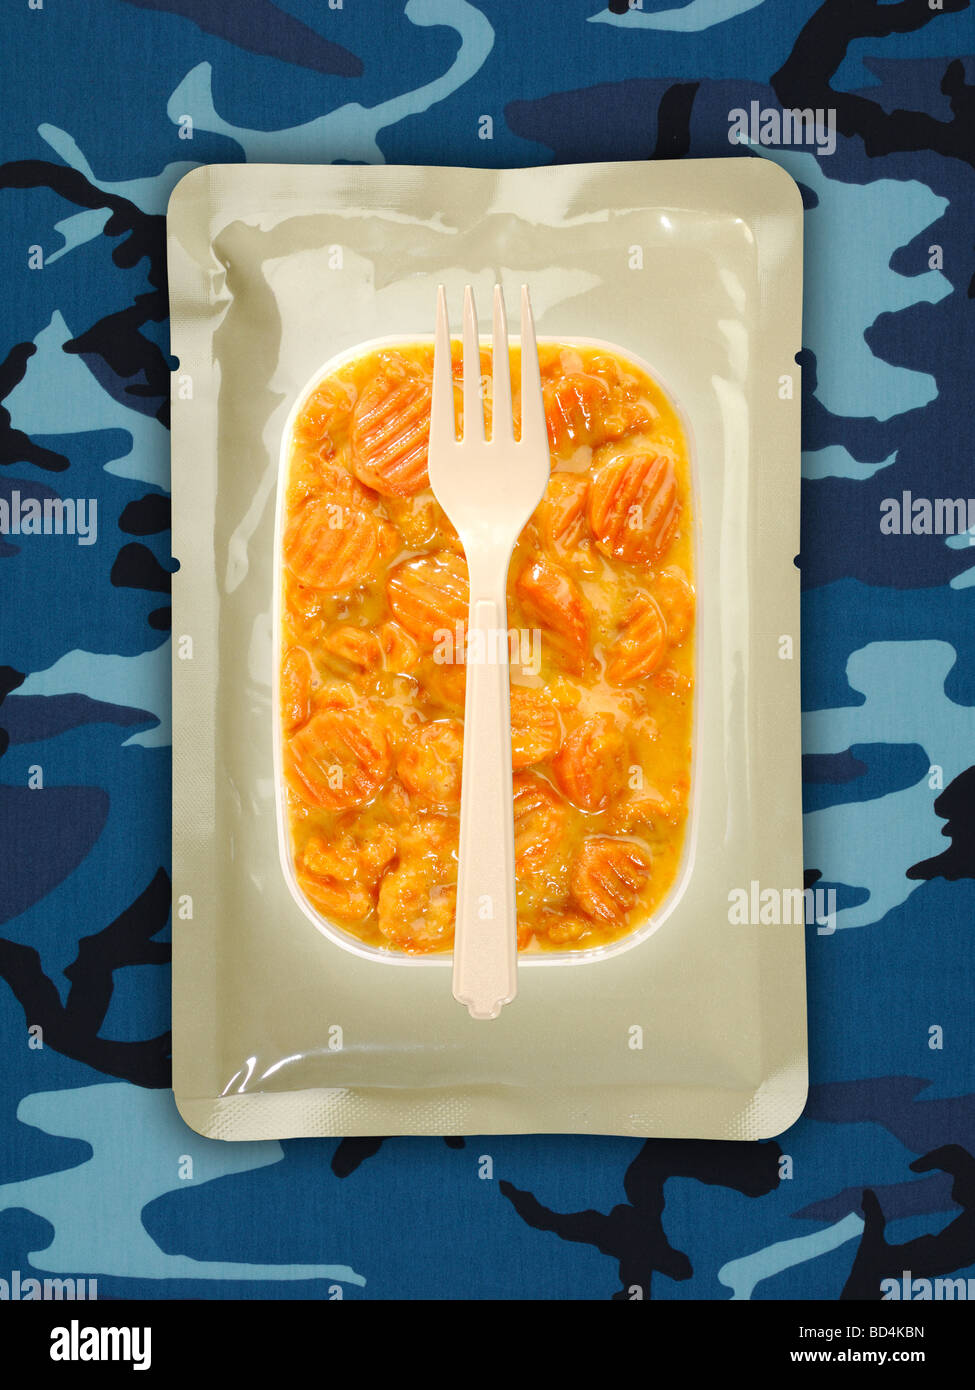 Une ration alimentaire militaire avec une fourche sur un fond bleu camouflage, carottes coupées en sauce Banque D'Images